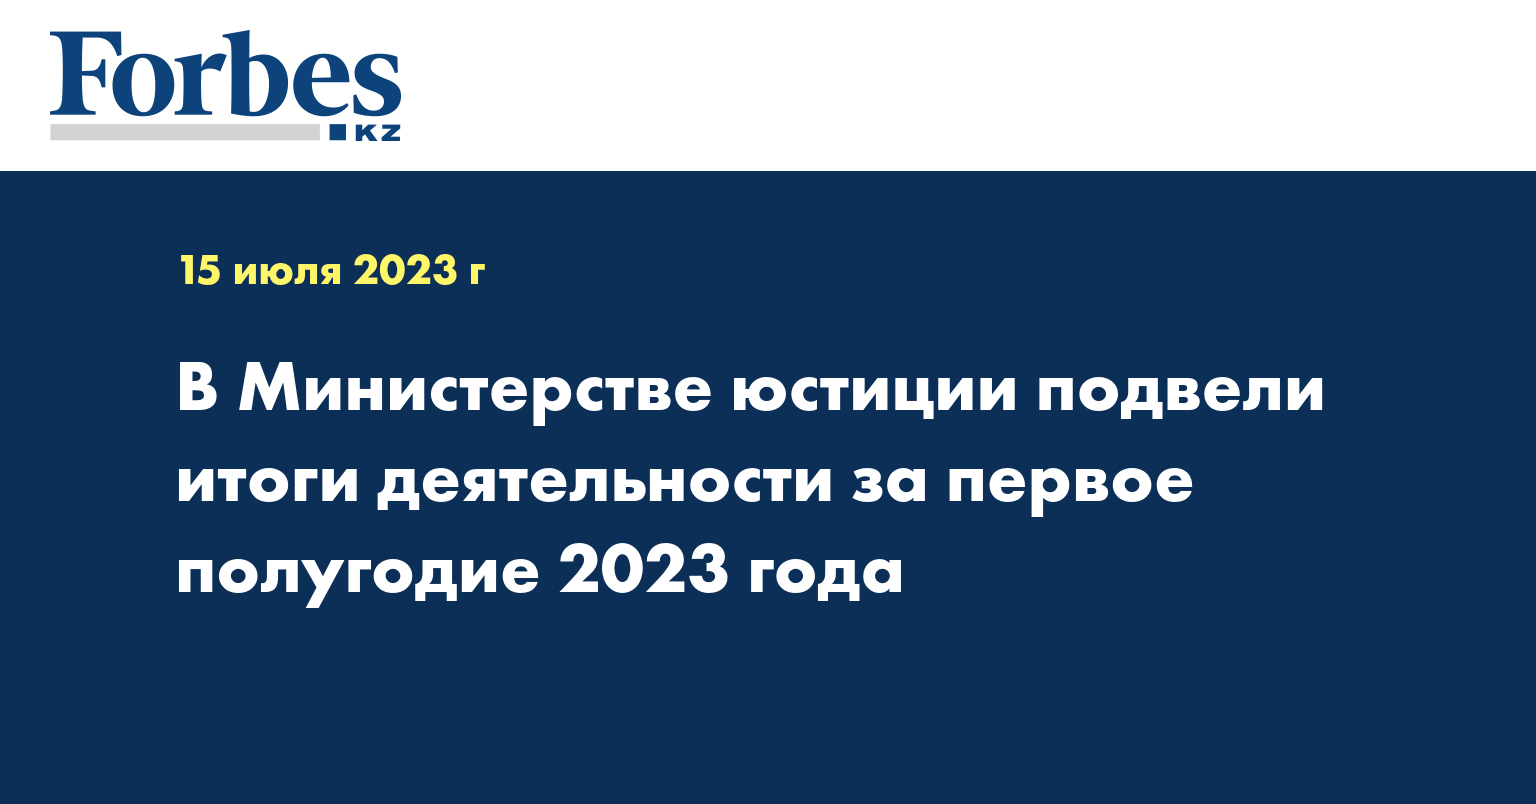 В Министерстве юстиции подвели итоги деятельности за первое полугодие 2023 года